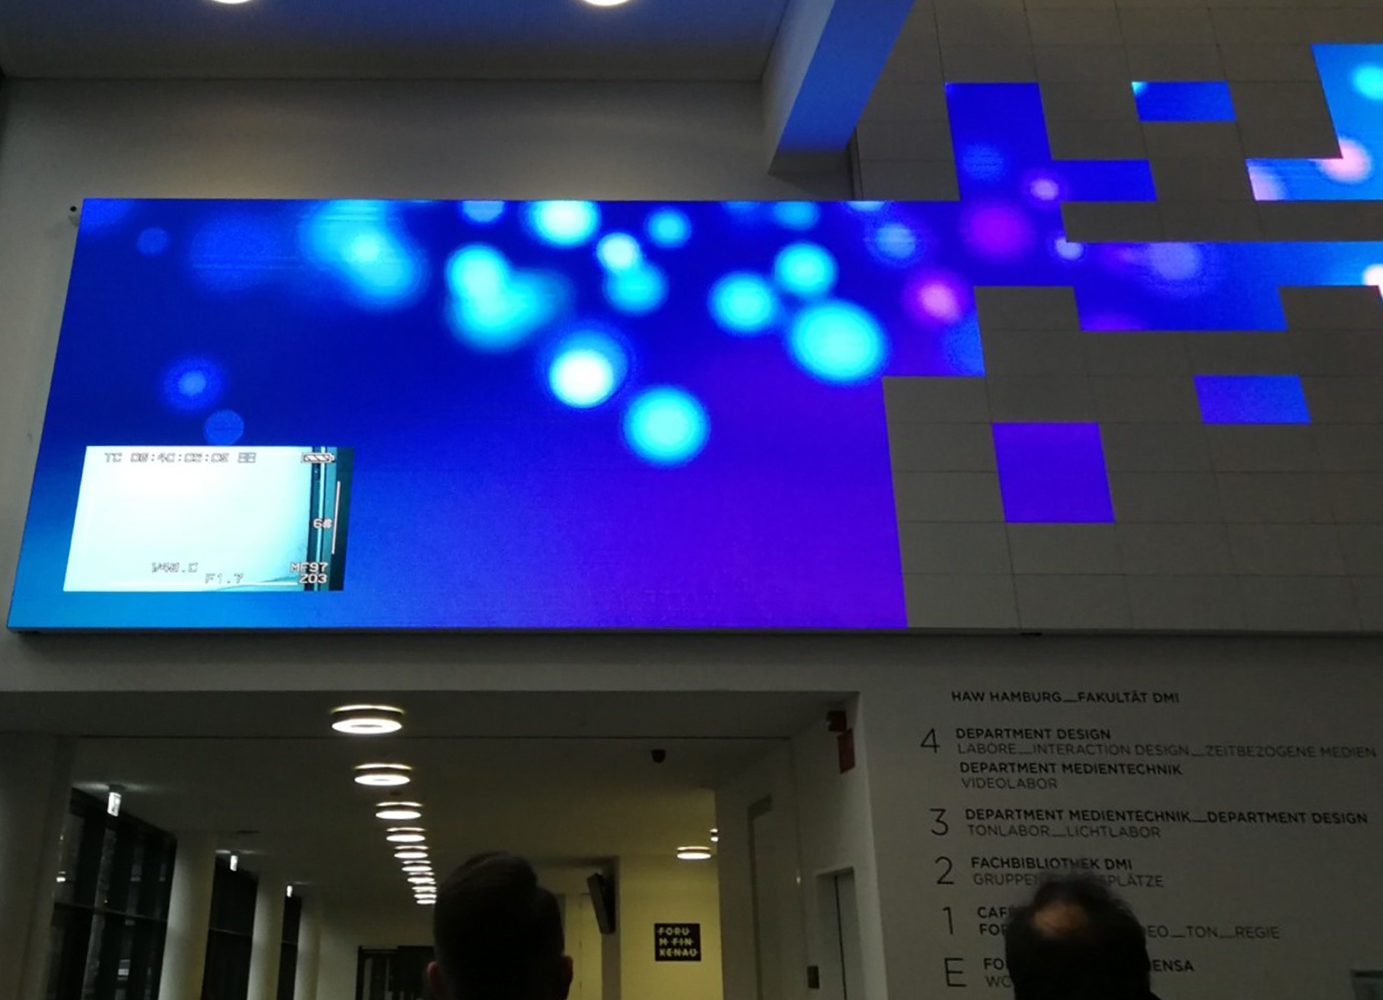 Die LED-Wand im Neubau der HAW Finkenau zeigt eine angenehme blaue Visualisierung an